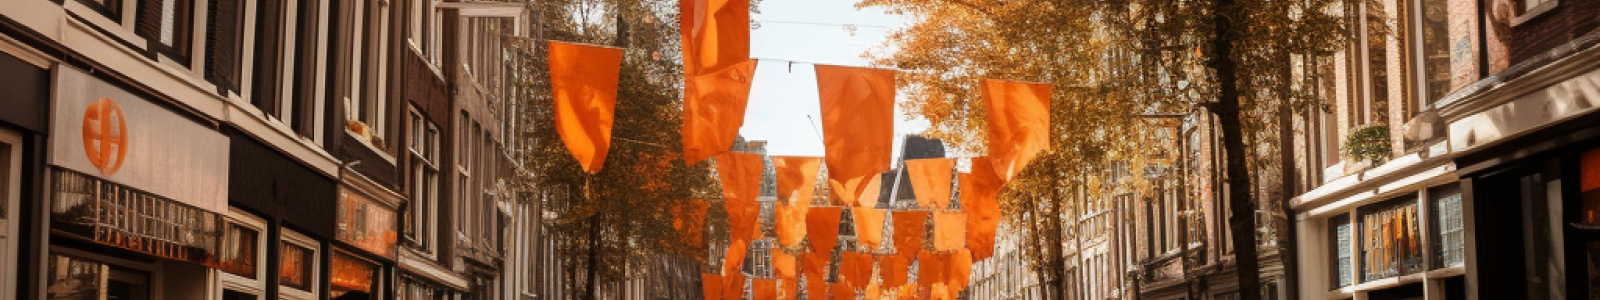 Oranje vlaggen